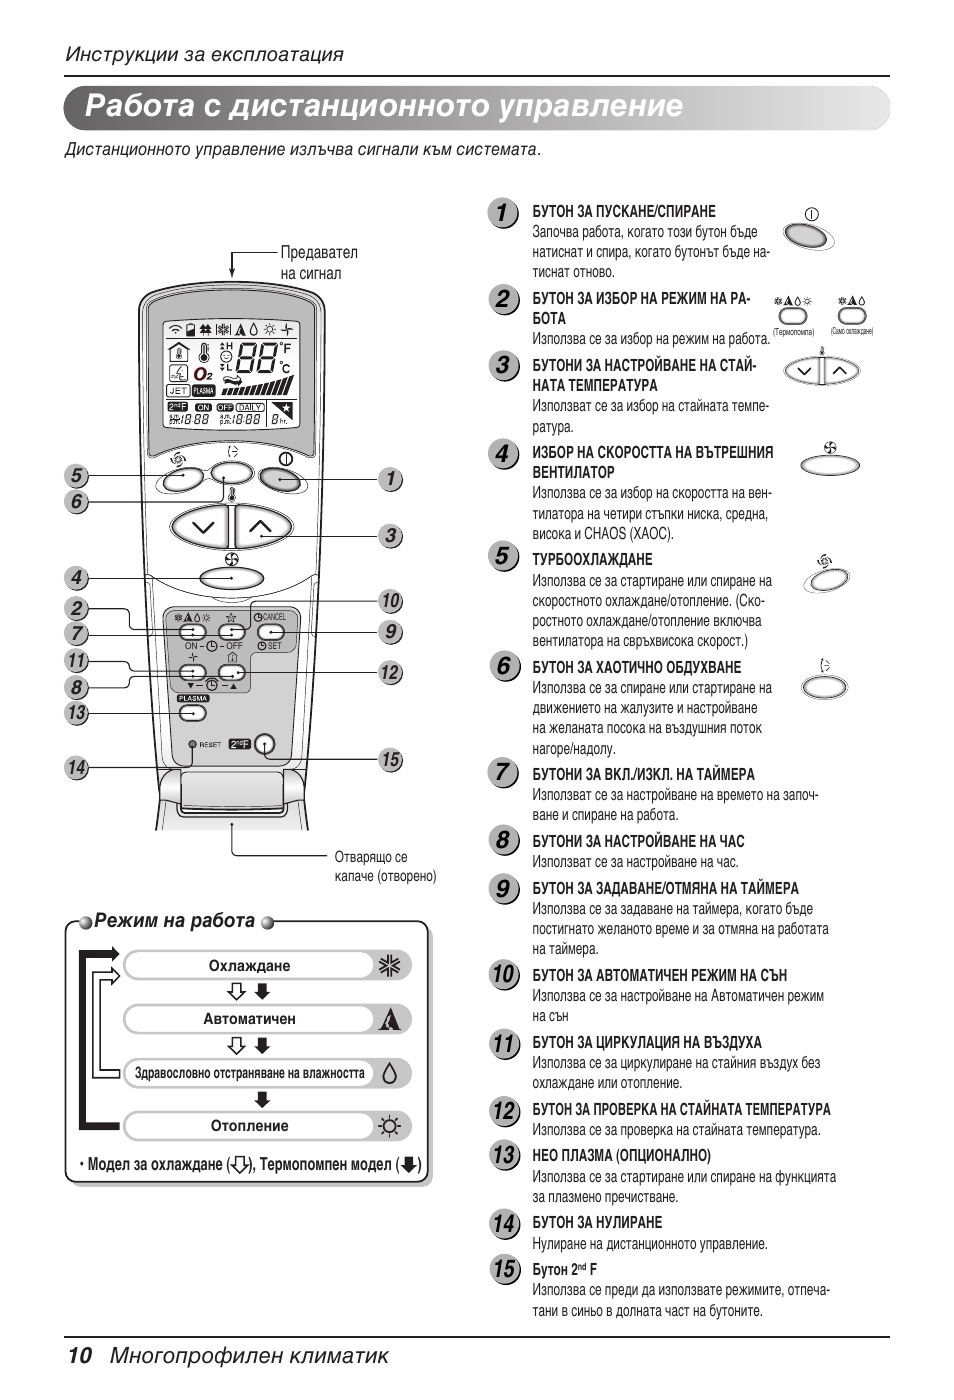 Работа с дистанционното управление, 10 многопрофилен климатик | LG MV12AH  User Manual | Page 254 / 413